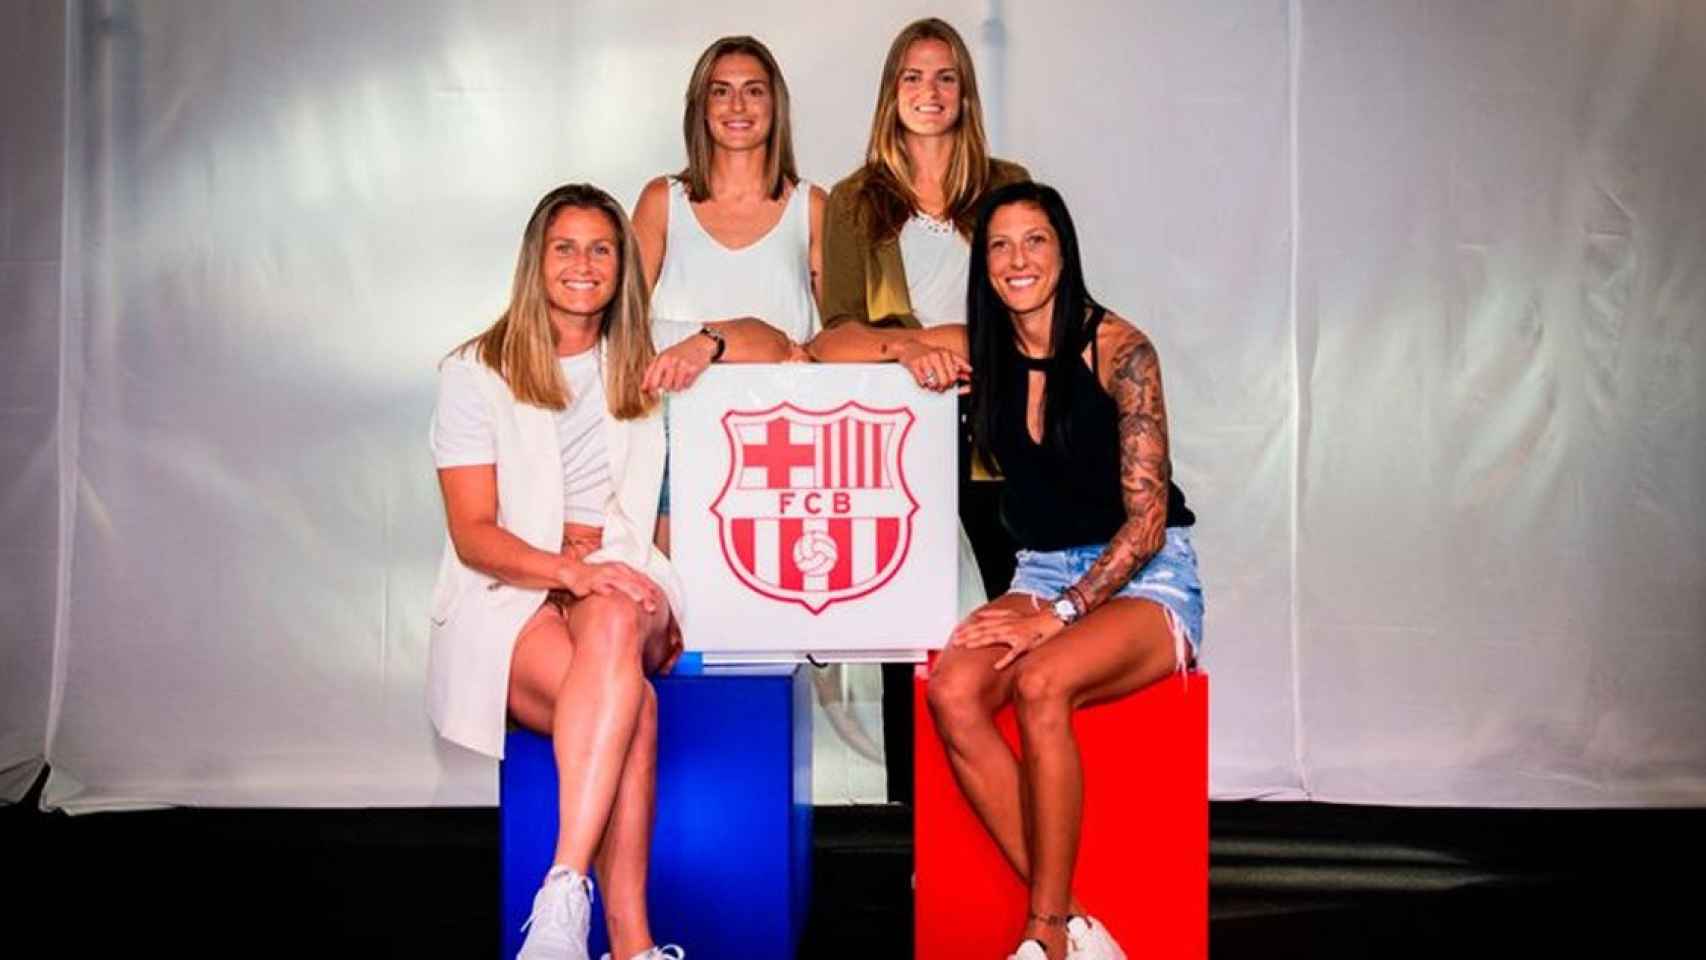 Alexia Putellas, Irene Paredes, Sandra Paños y Jennifer Hermoso, nominadas al Balón de Oro / FCB